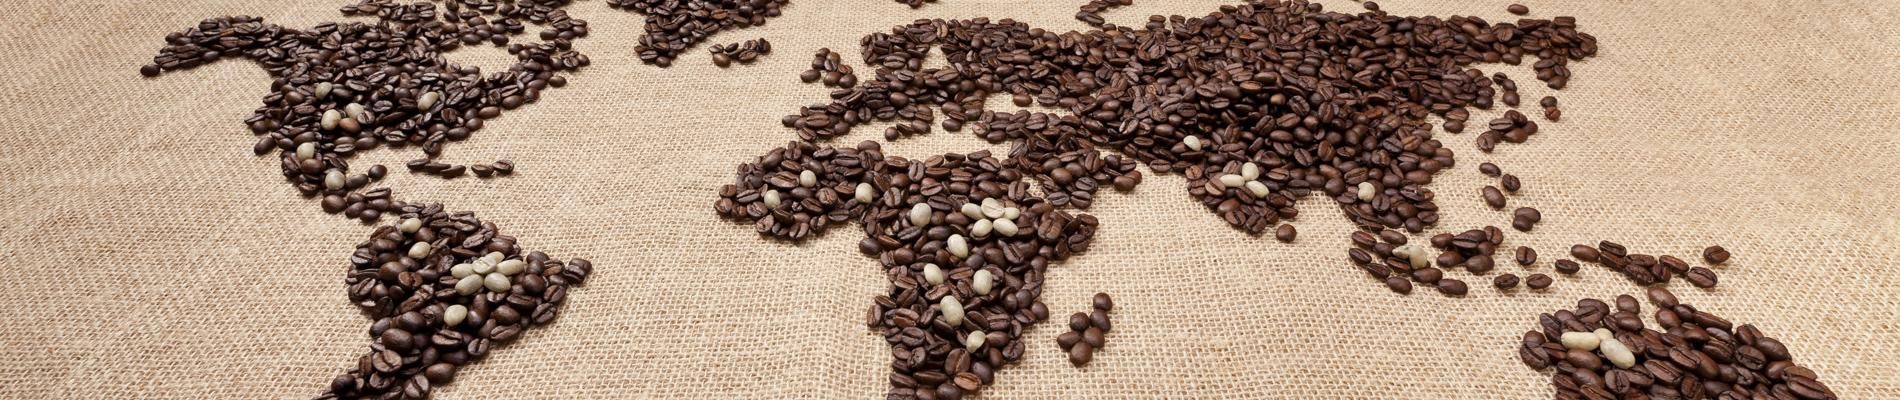 Kaffeearten rund um die Welt. Barista Ausbildung